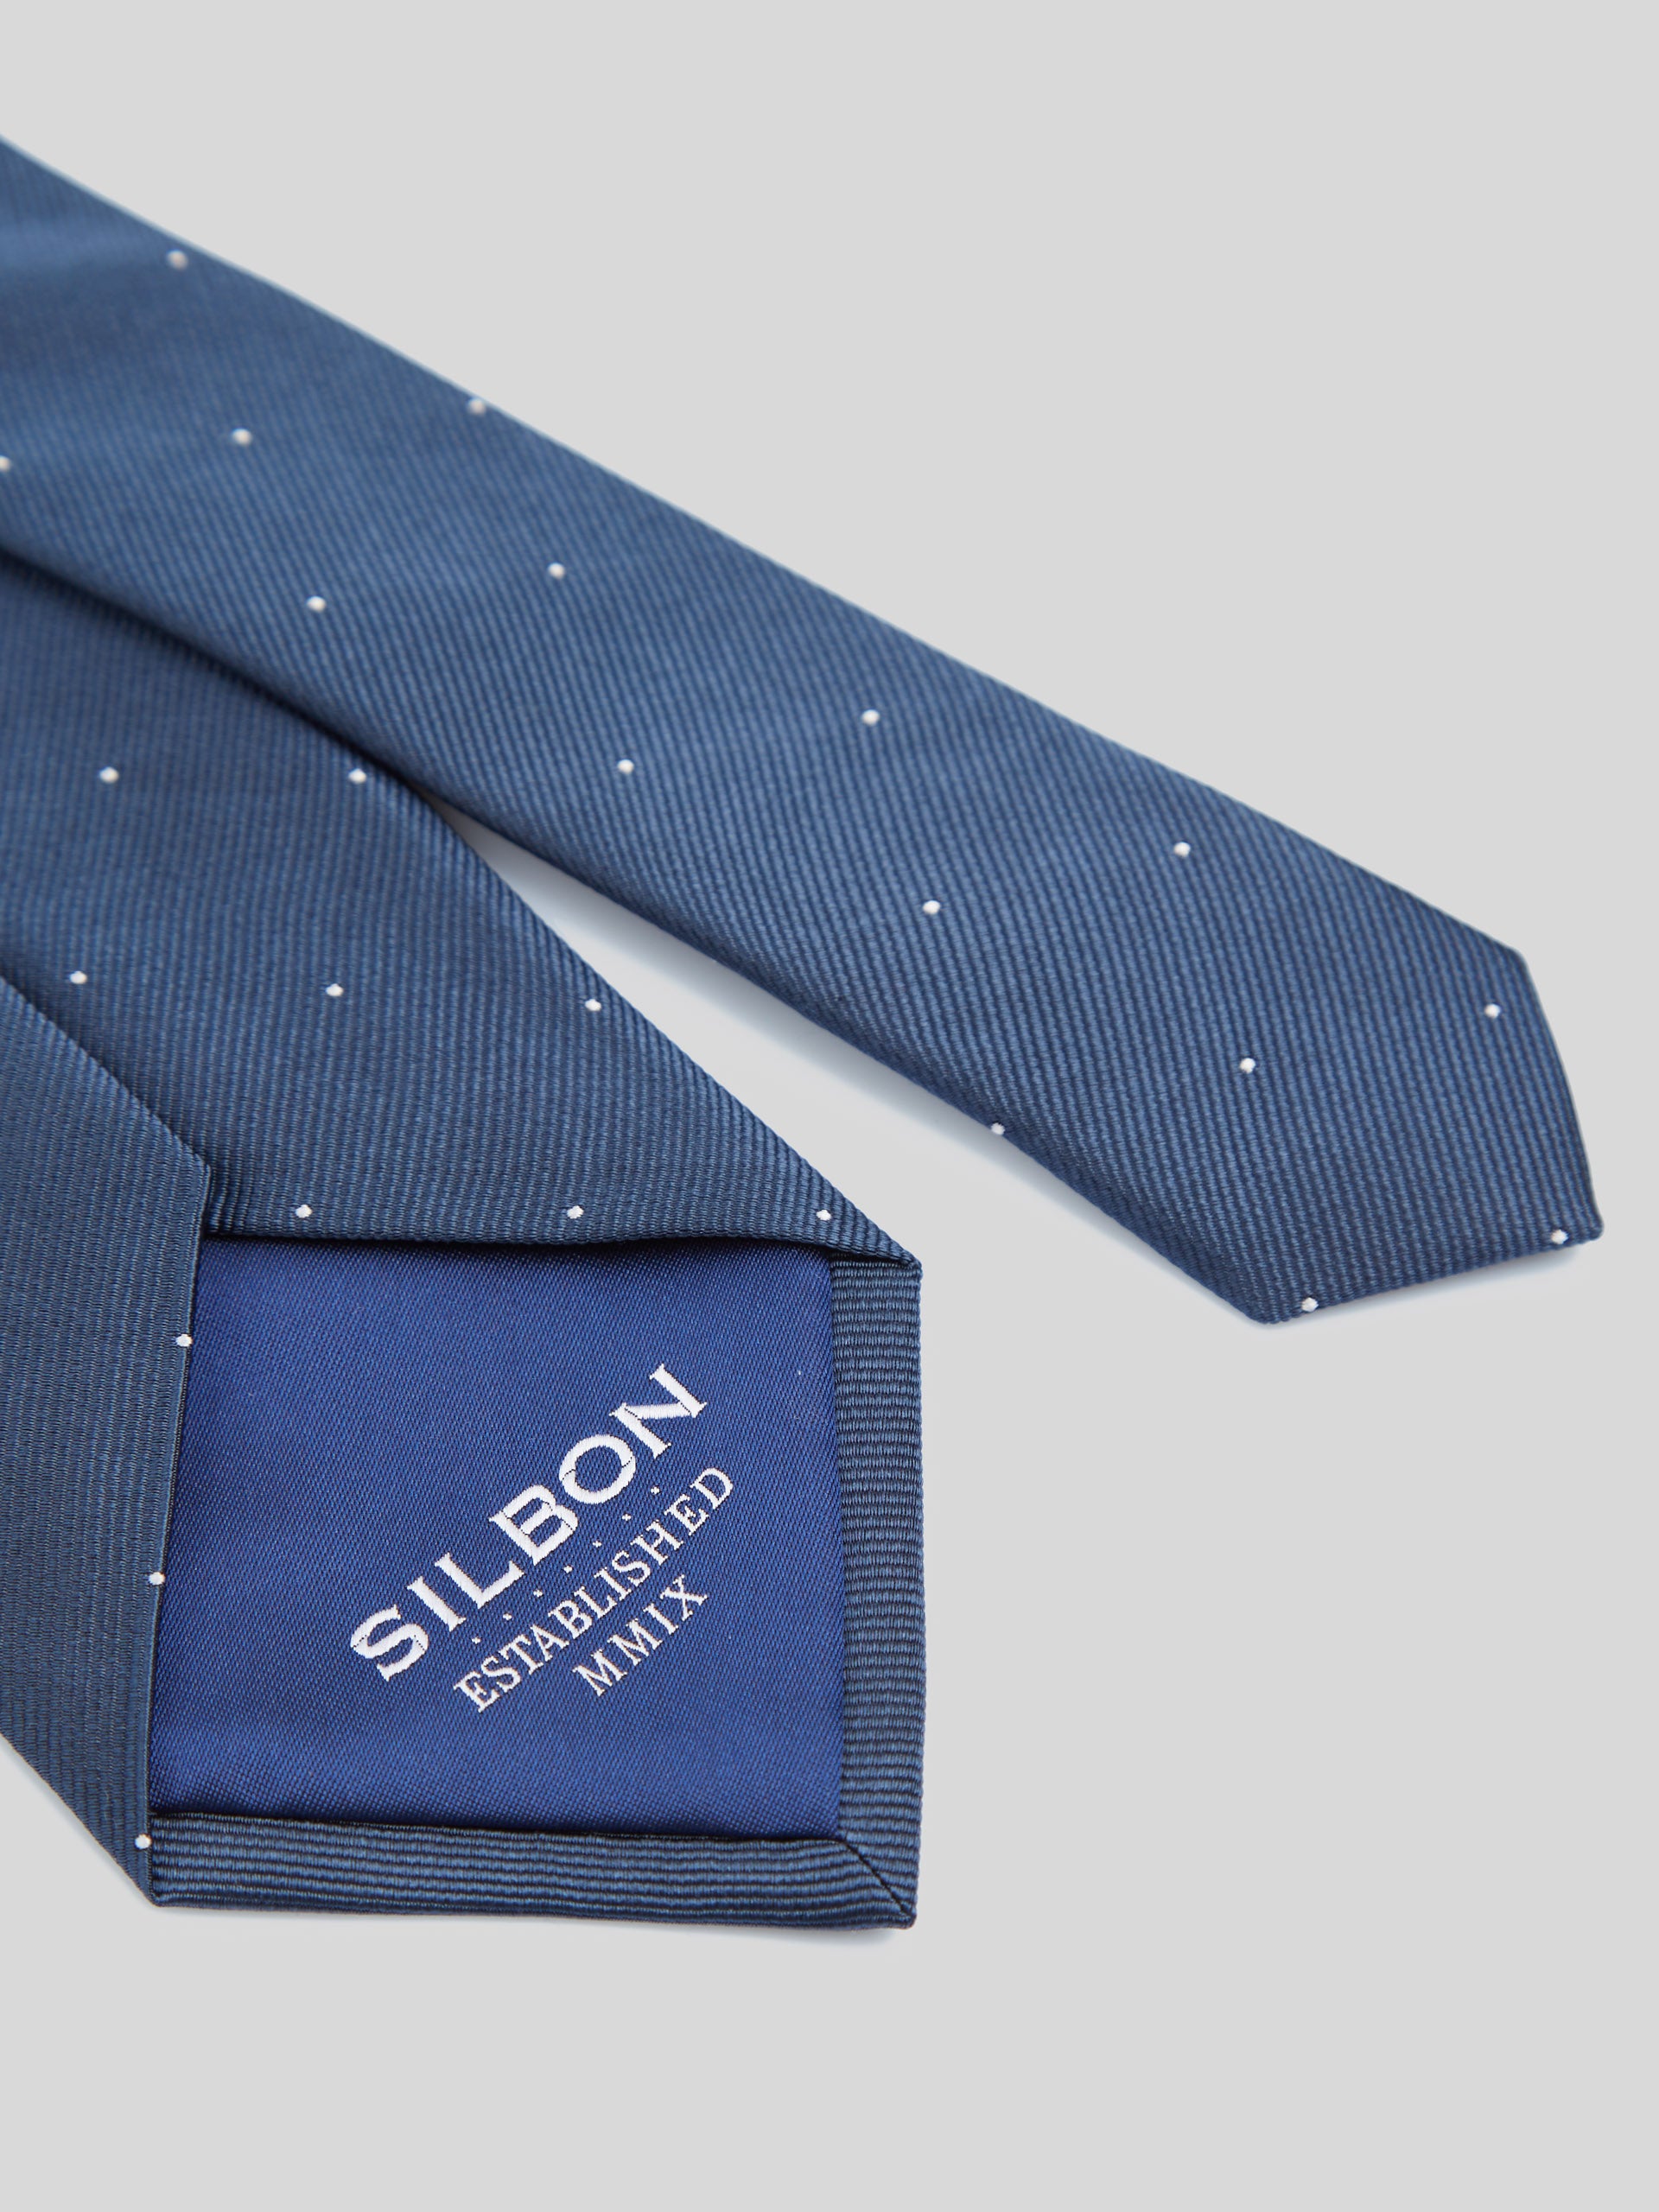 Corbata silbon mini puntos azul marino